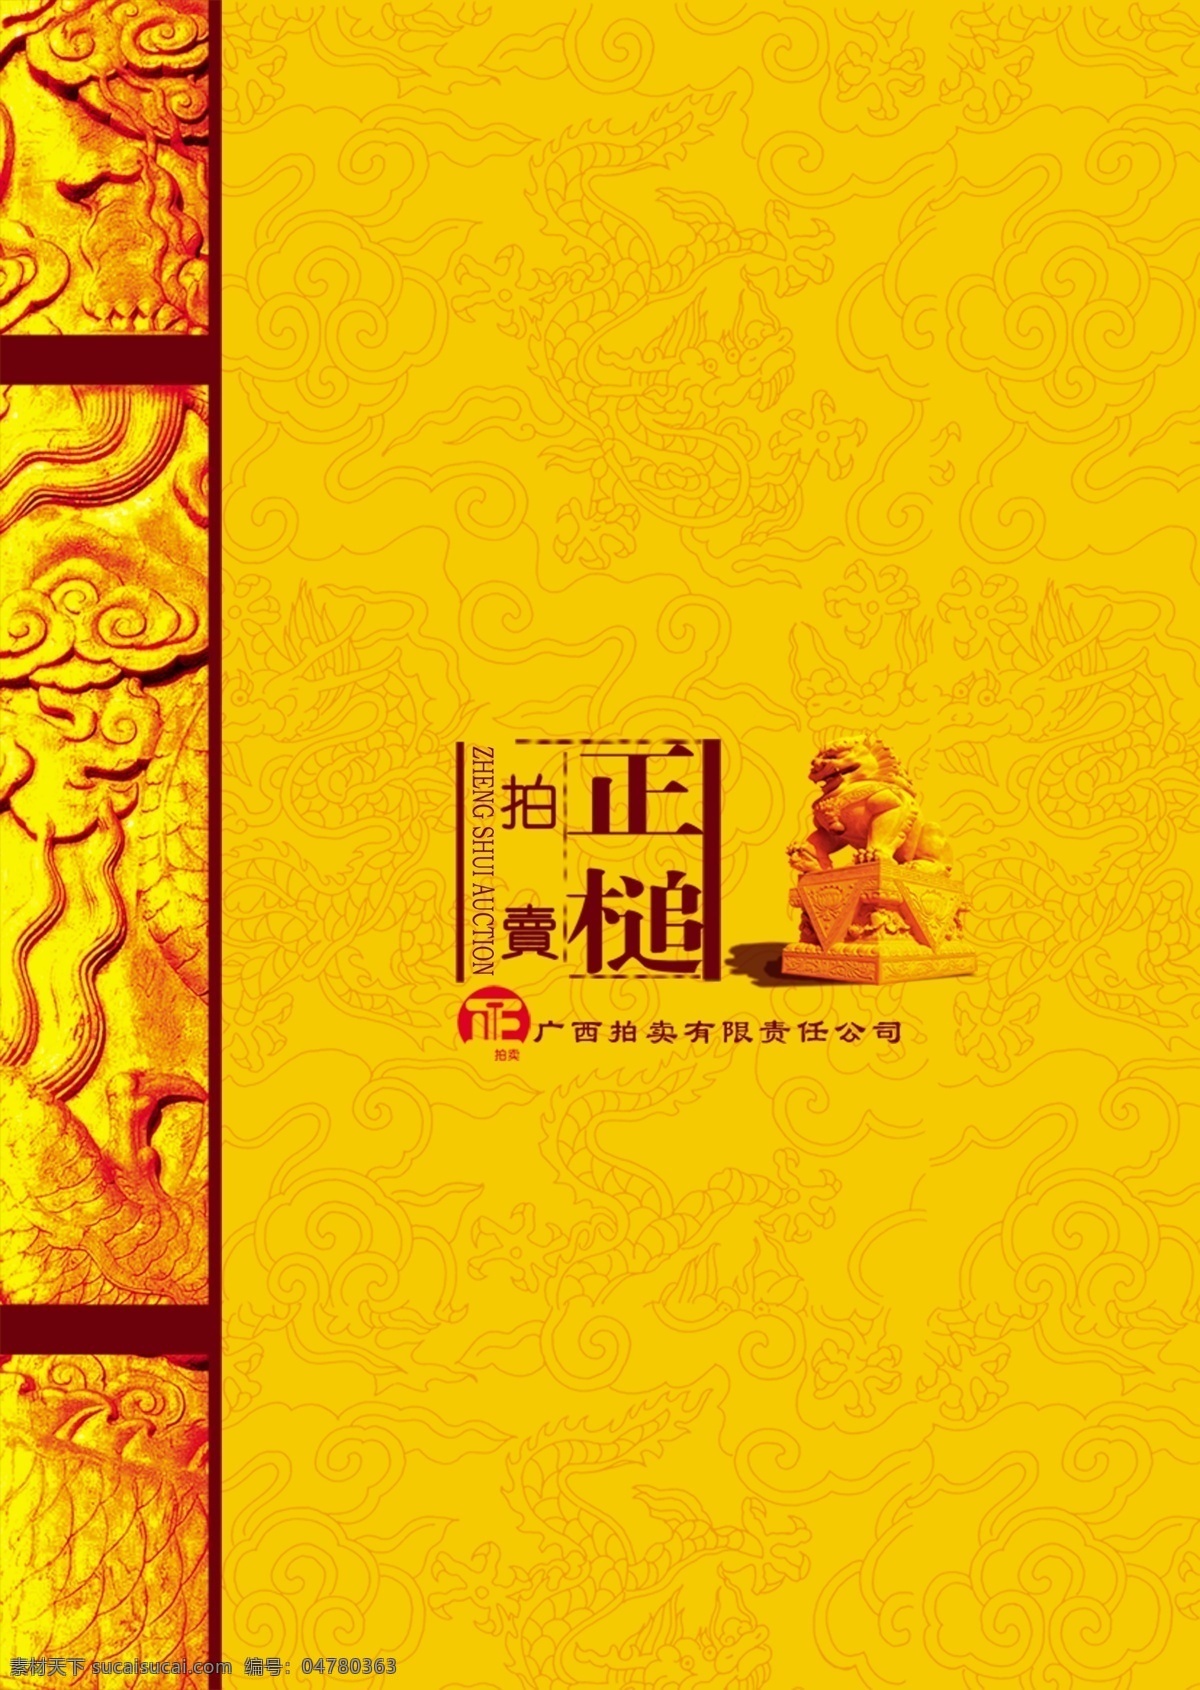 圣旨贵族 圣旨 贵族 贵族图片下载 满汉全席 龙 宫廷 中国风 矢量